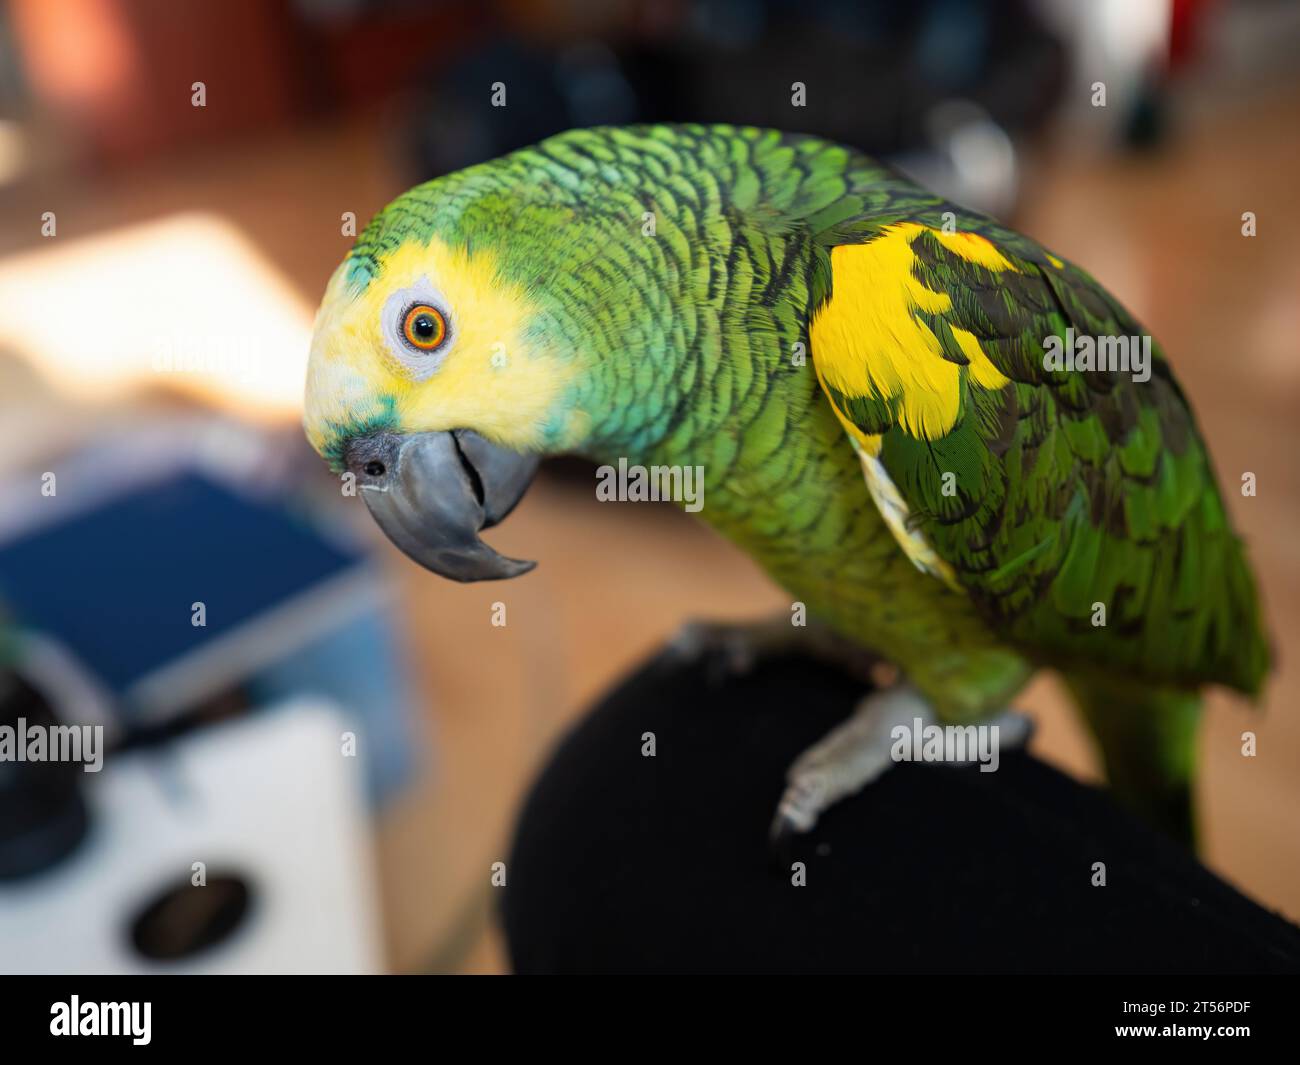 Der türkisfarbene amazonas-Papagei (Amazona aestiva) ist frei beweglich. Netter grüner Vogel, der auf den Knien seines Besitzers sitzt Stockfoto